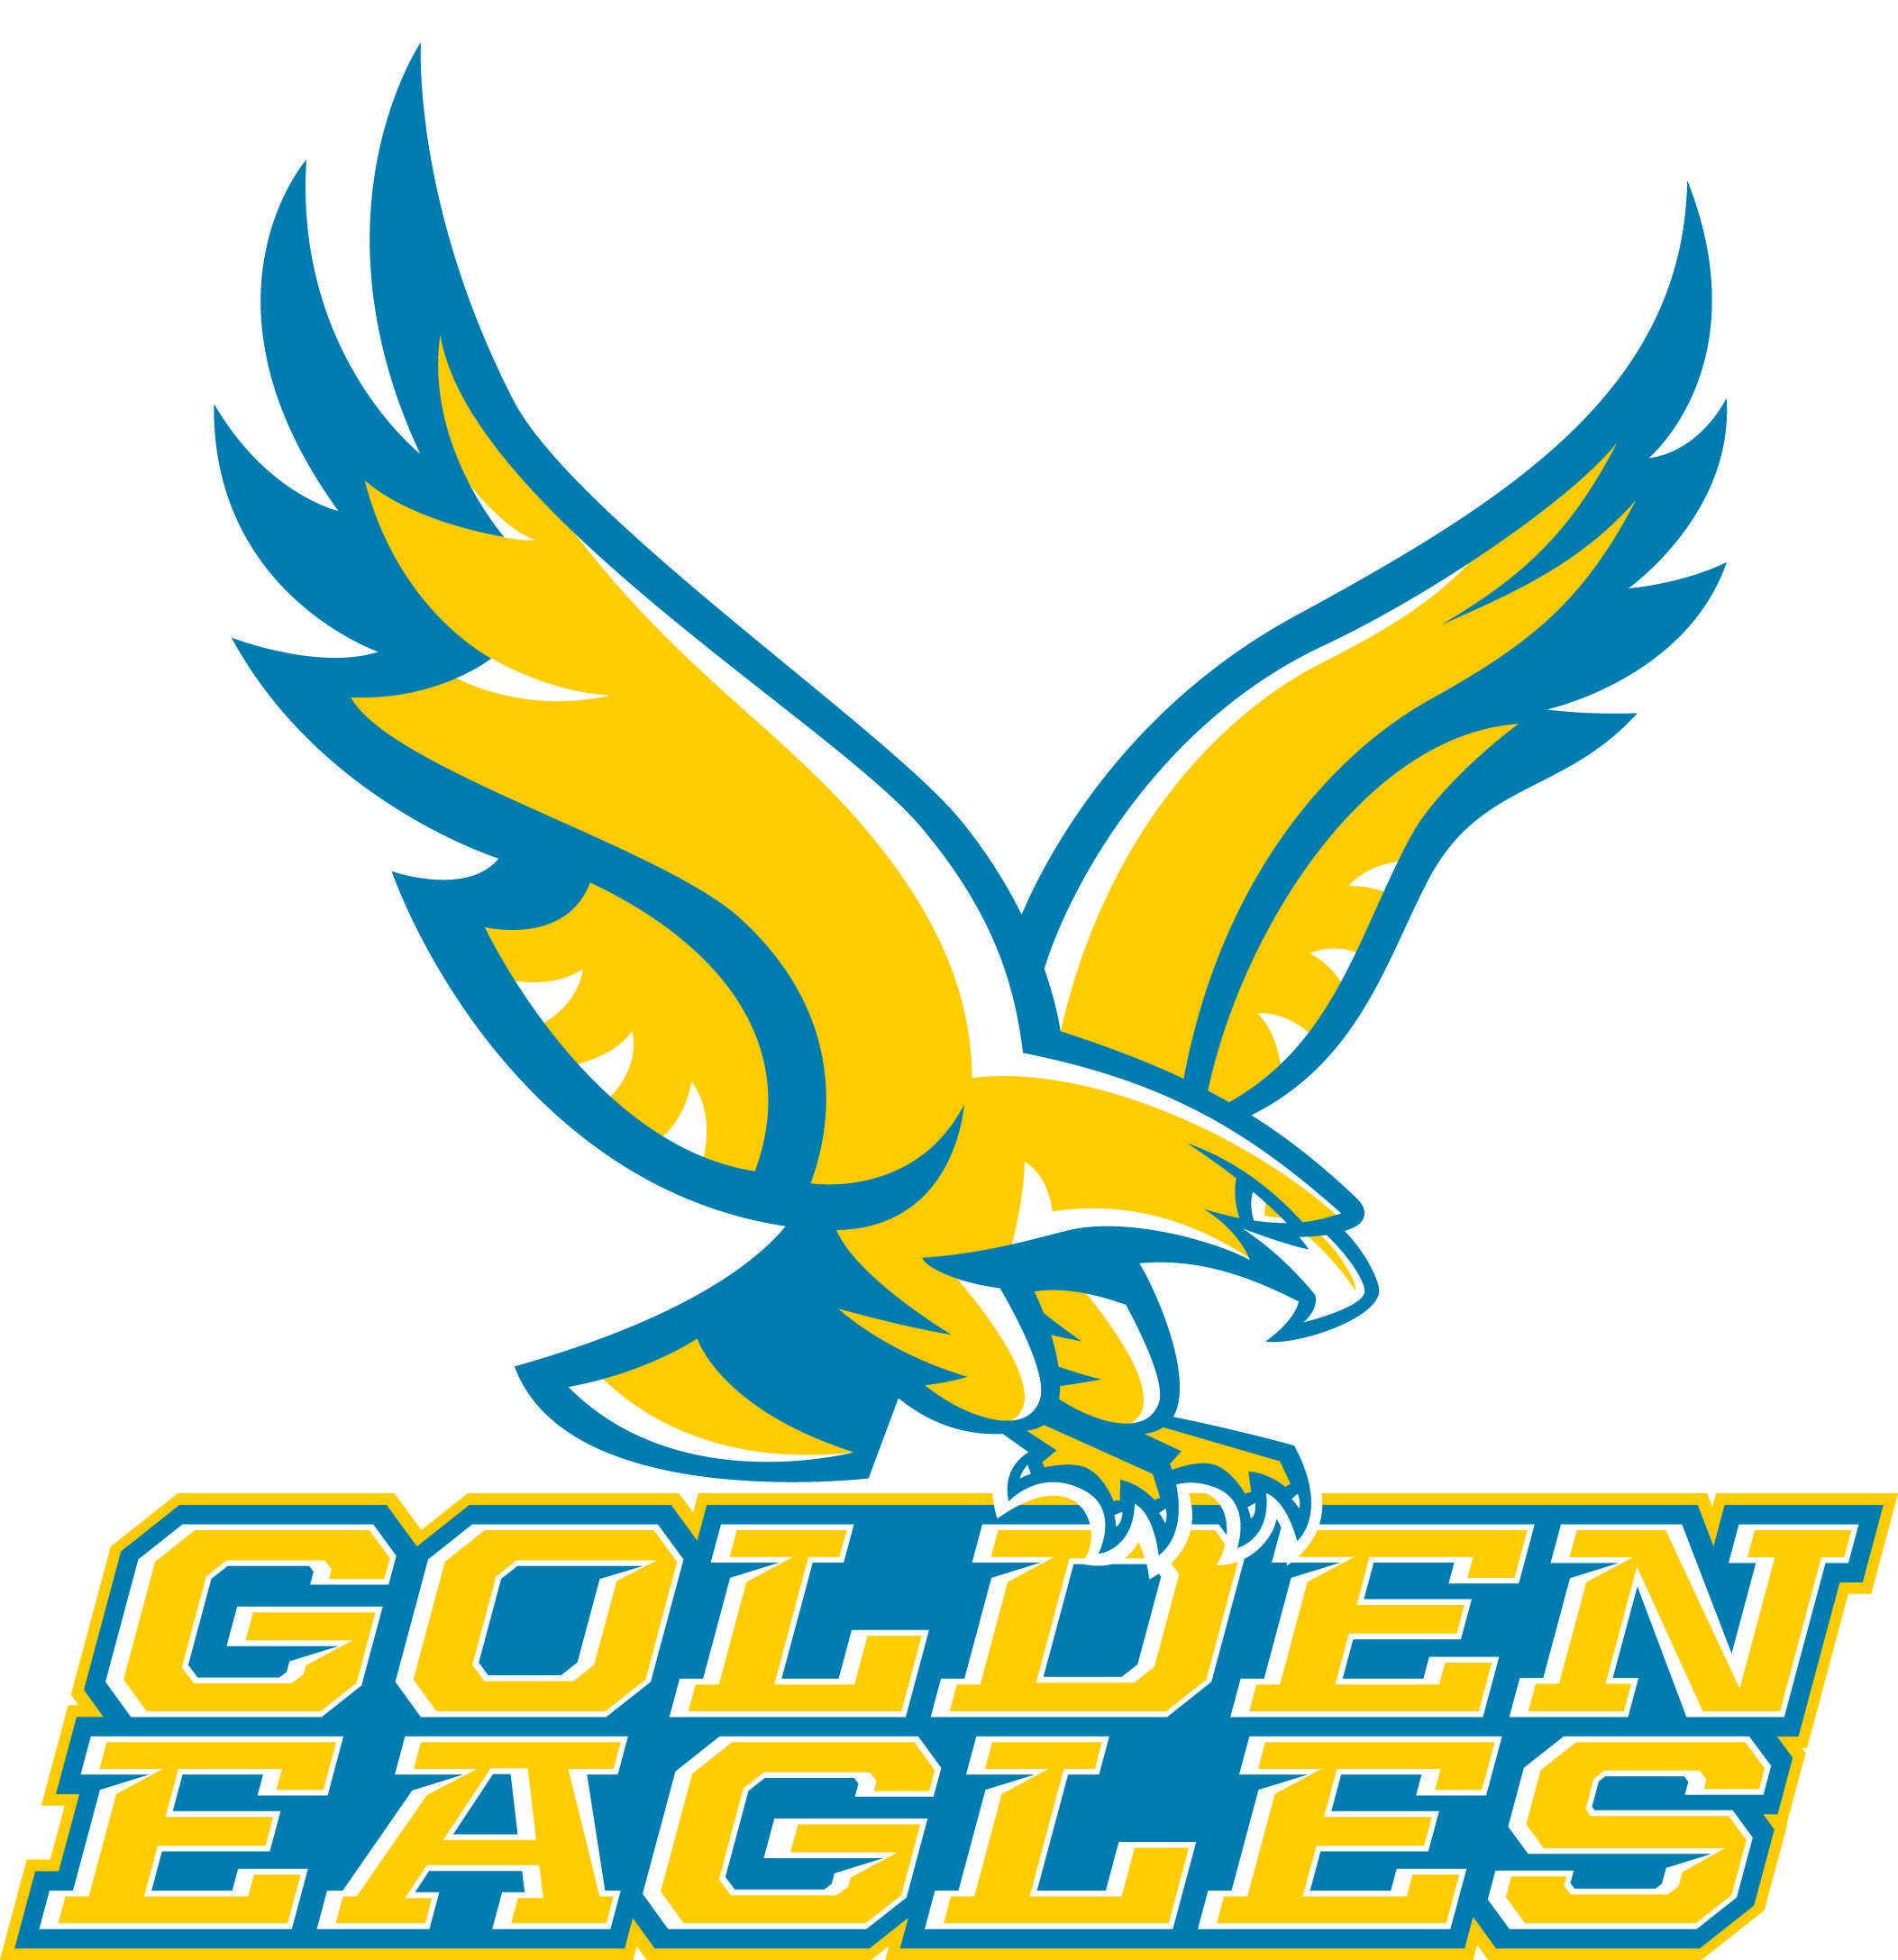 Yellow Eagle Logo - Athletic Logos - About Us - Holy Family Catholic Schools